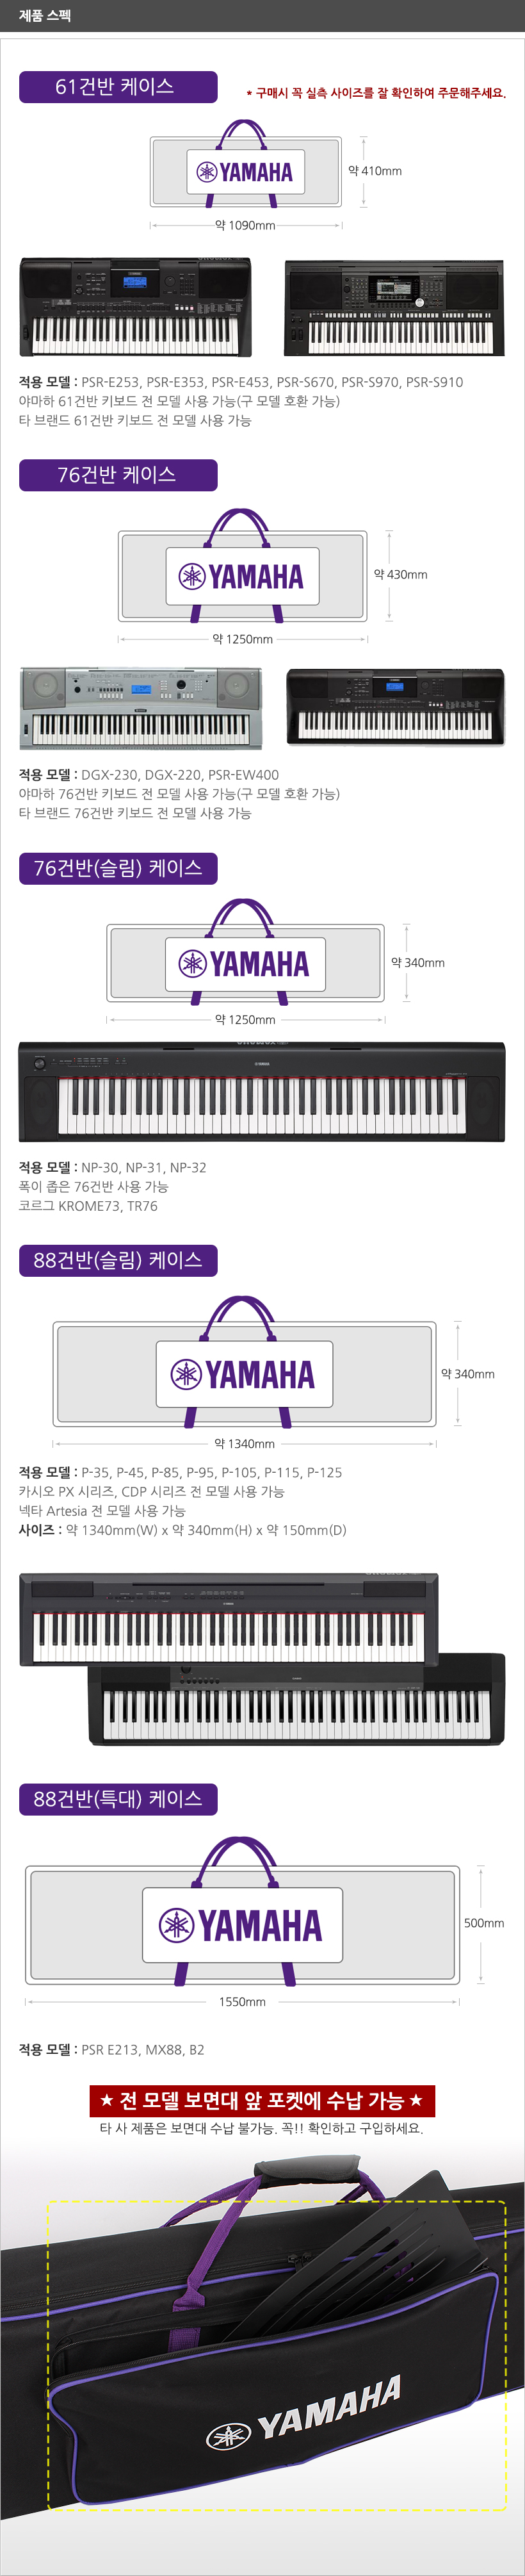 Yamaha-Keyboard-Case 제품 스펙